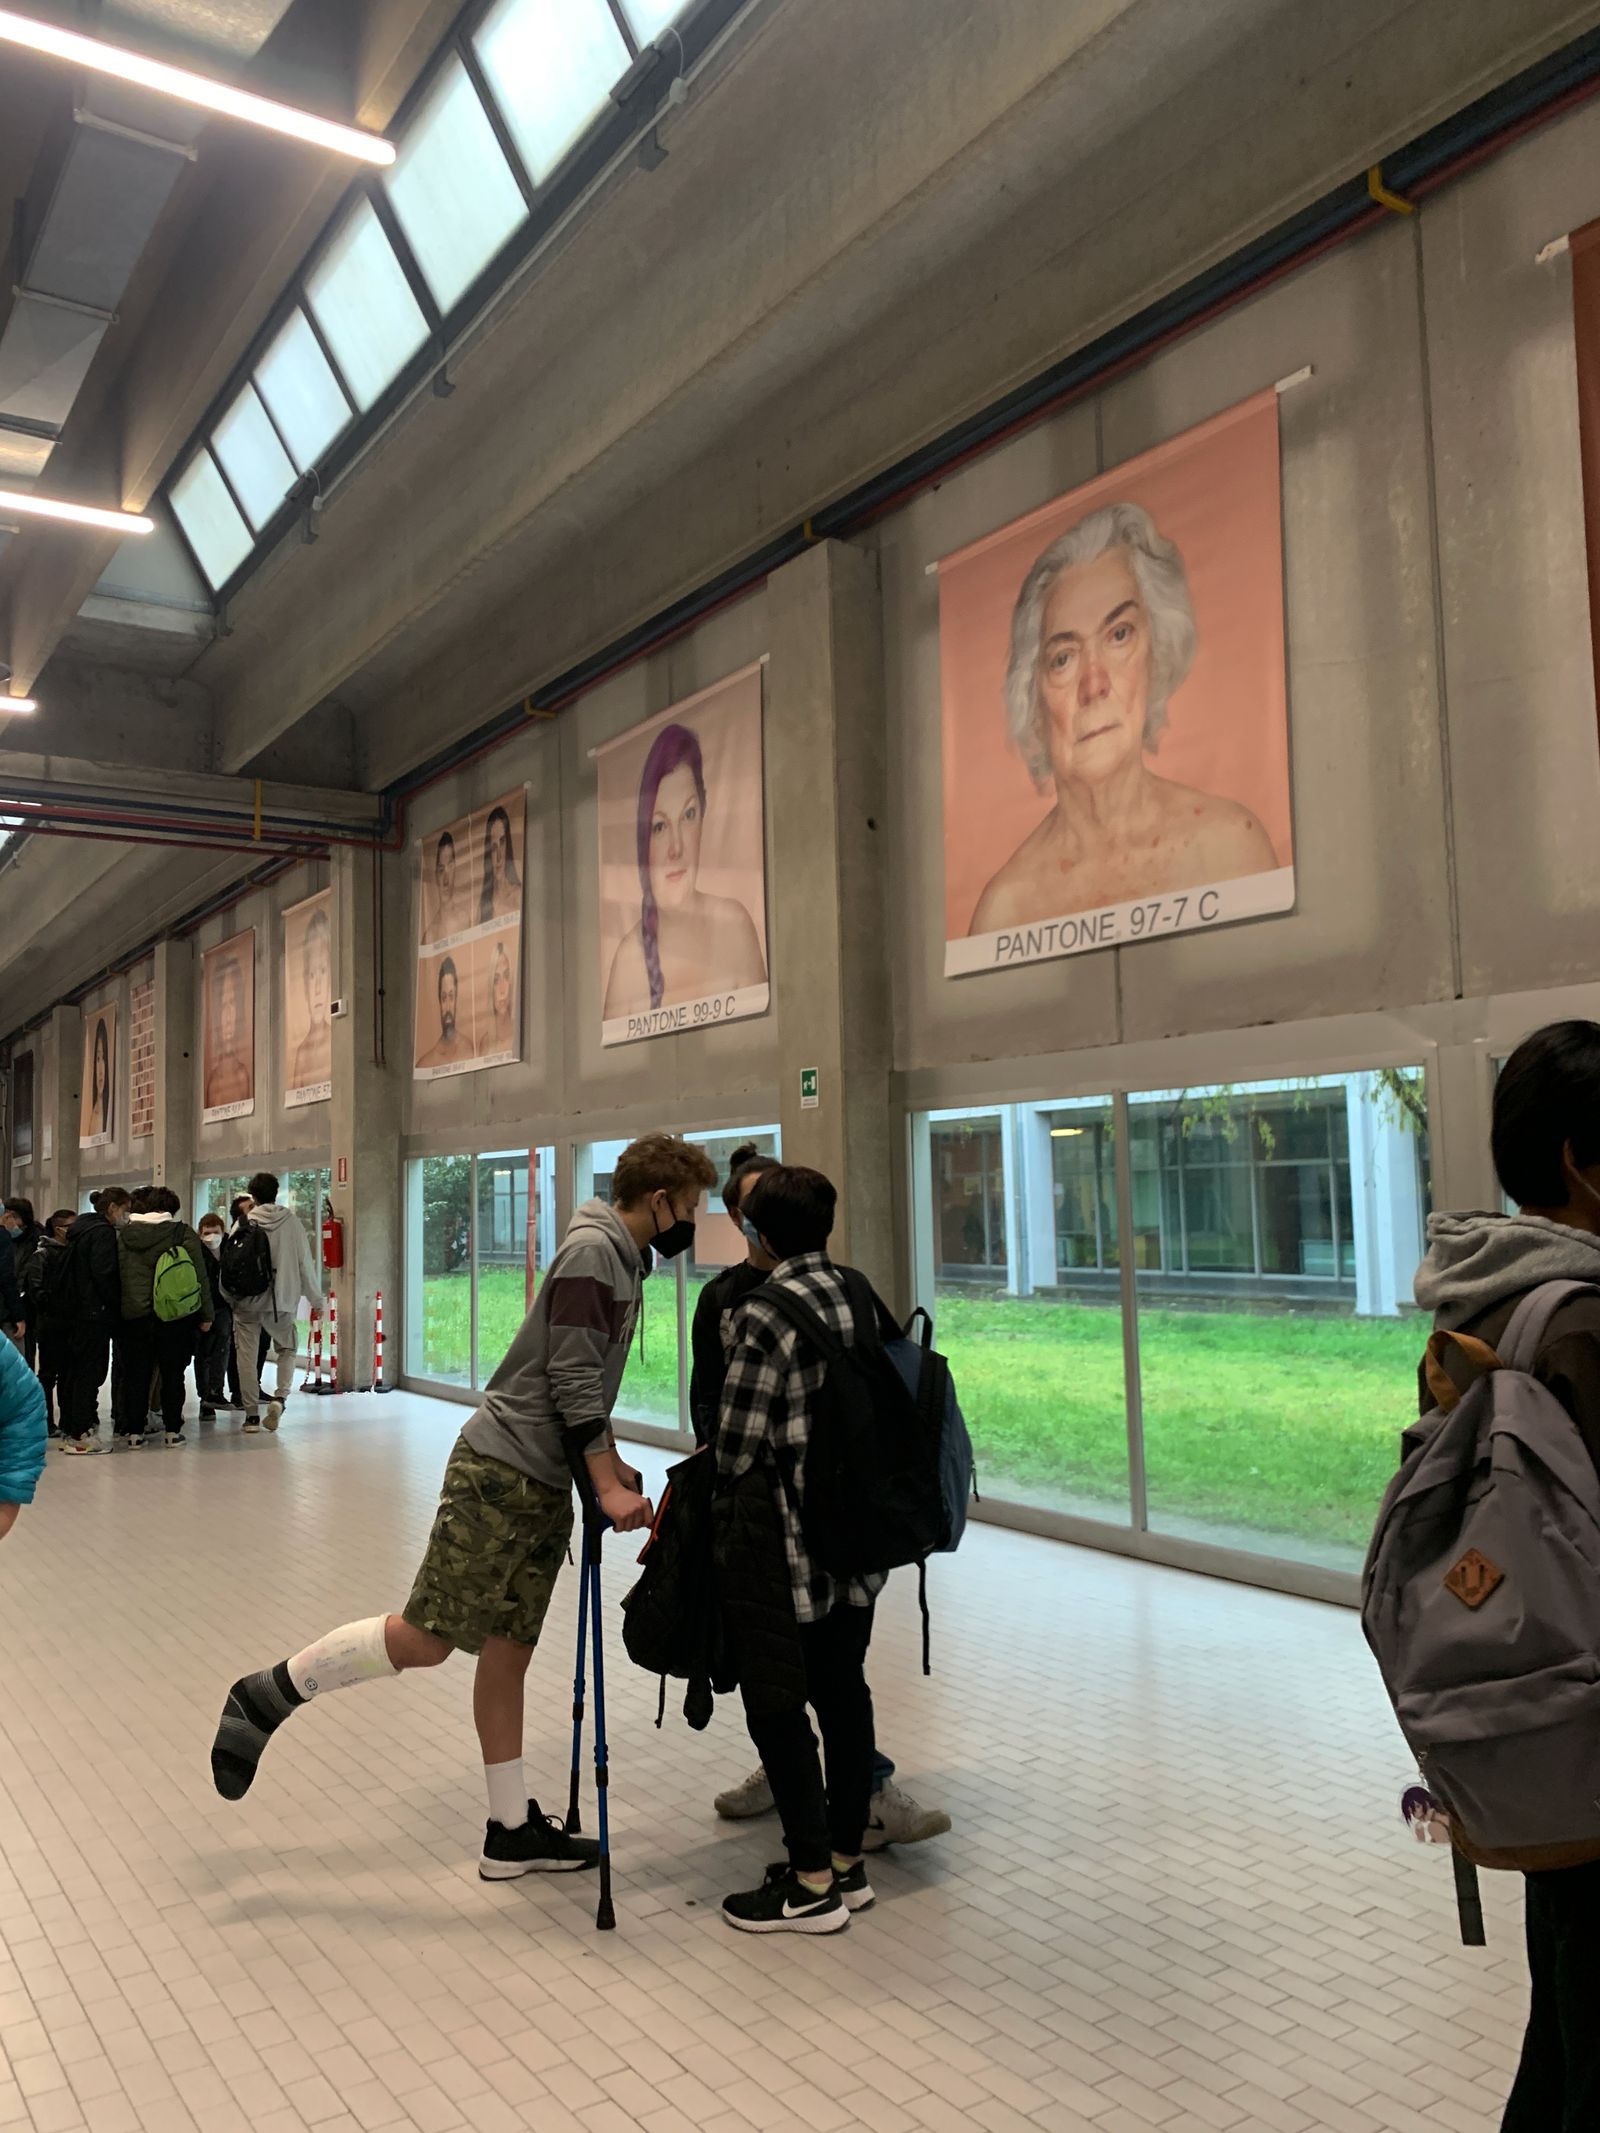 Students talk in the corridor of IIS Belluzzi Fioravanti high school in Bologna, Italy